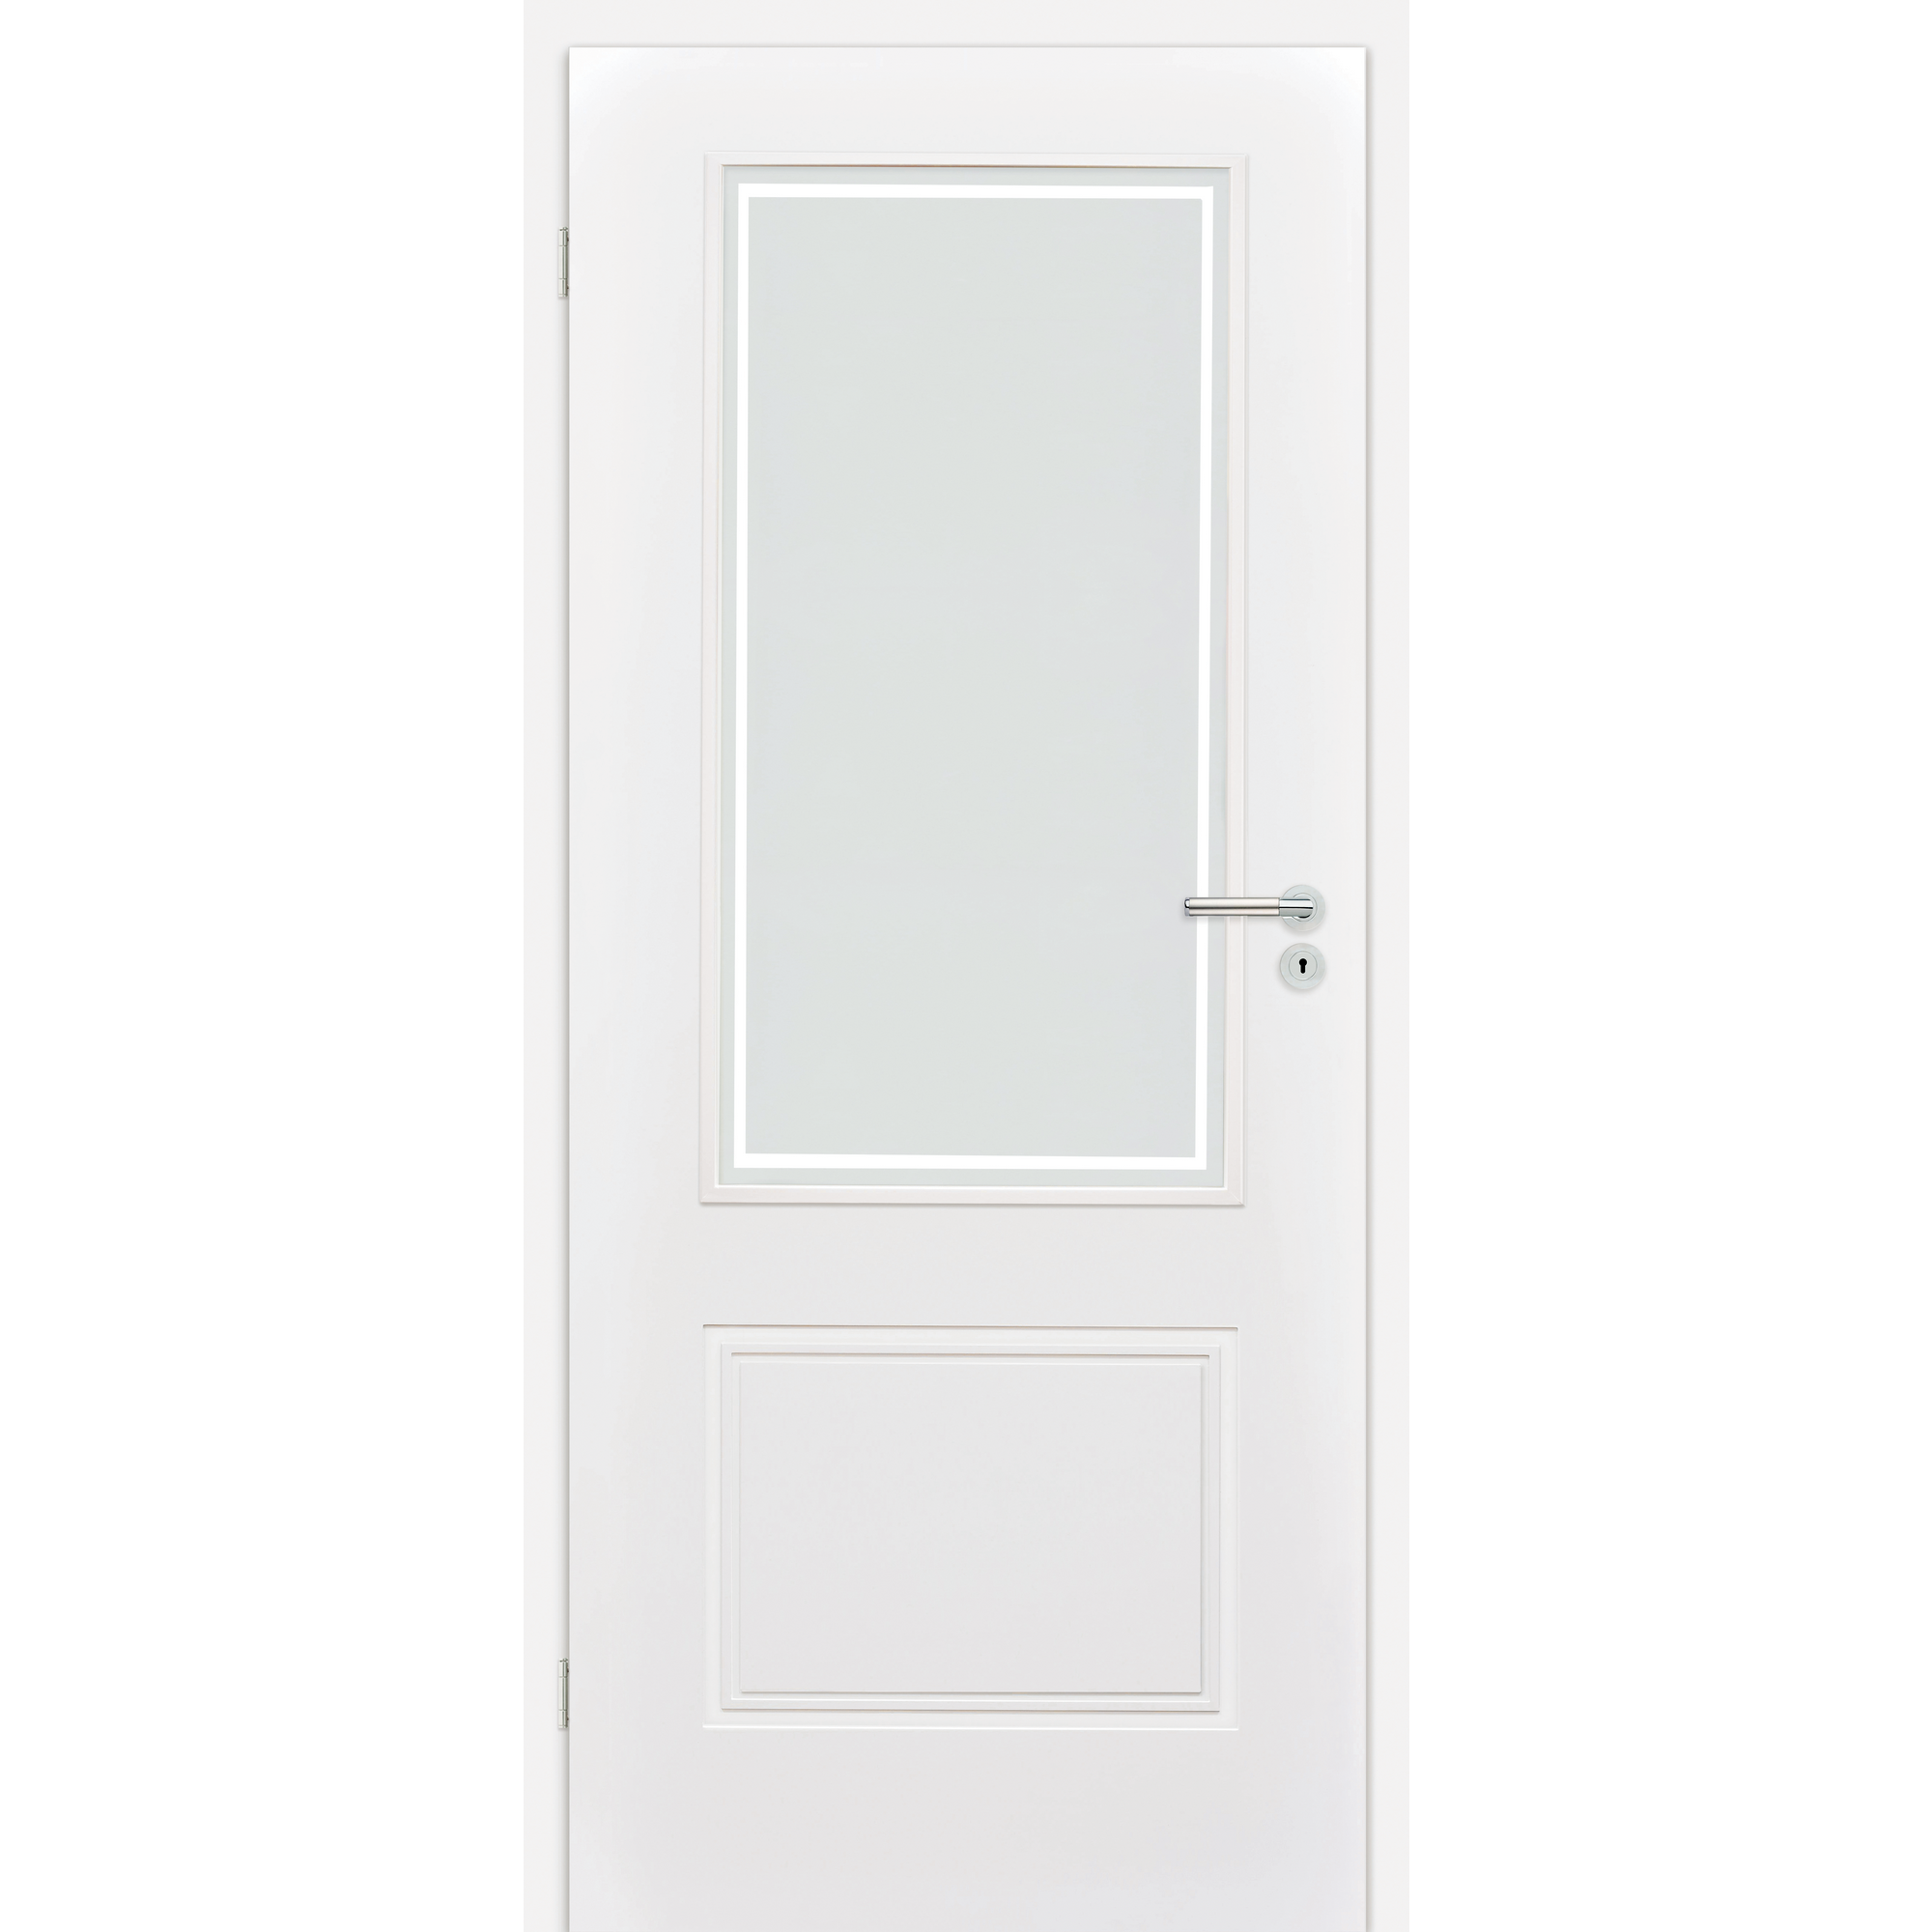 Innentür 'Linea 1.3 RS' mit Lichtausschnitt weiß 198,5 x 73,5 cm, Linksanschlag + product picture